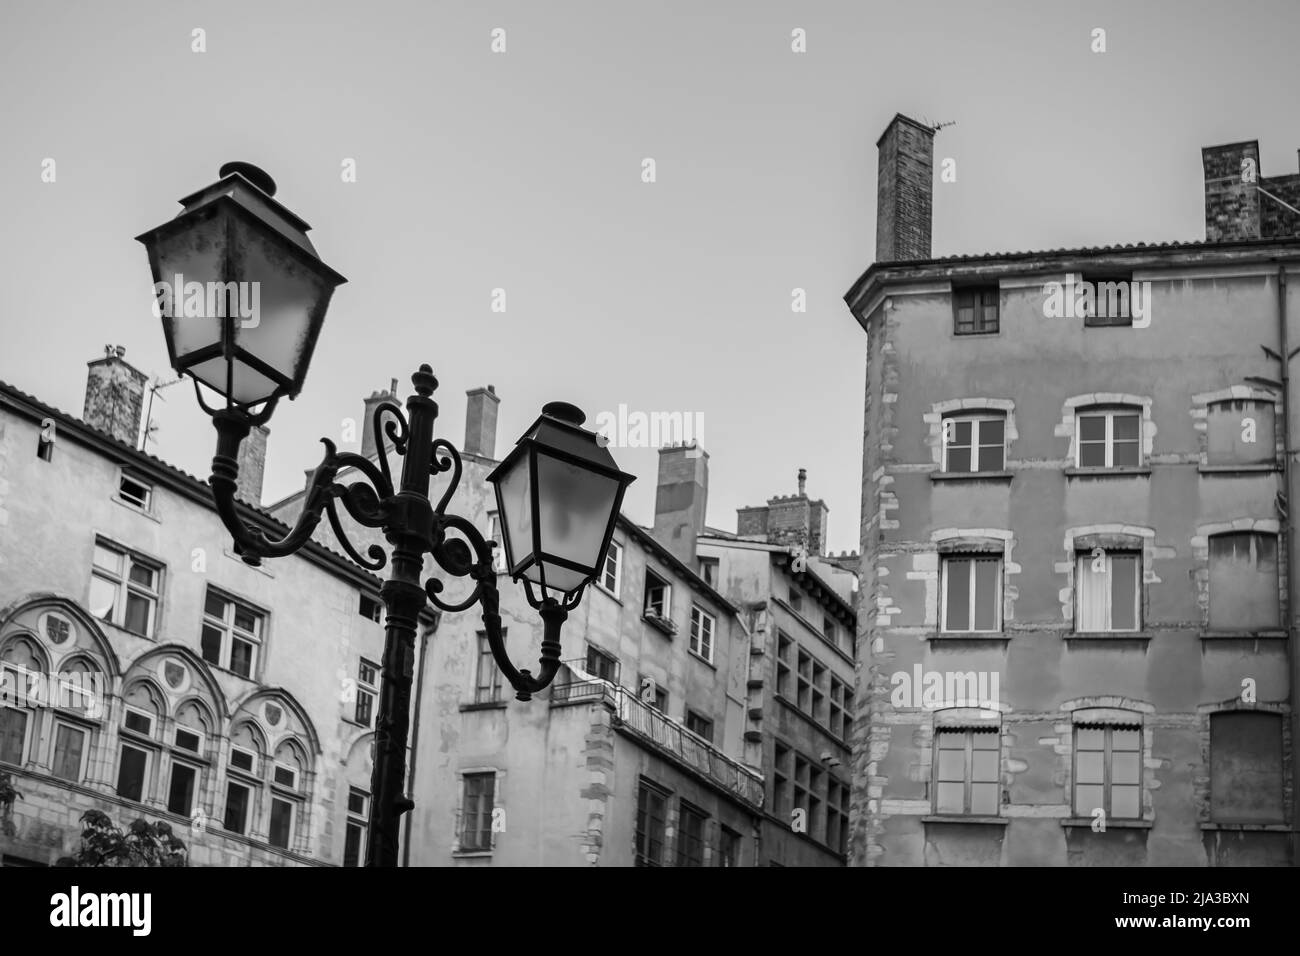 La vieille ville pittoresque de Lyon avec ses bâtiments résidentiels colorés et son lampadaire vintage en noir et blanc Banque D'Images